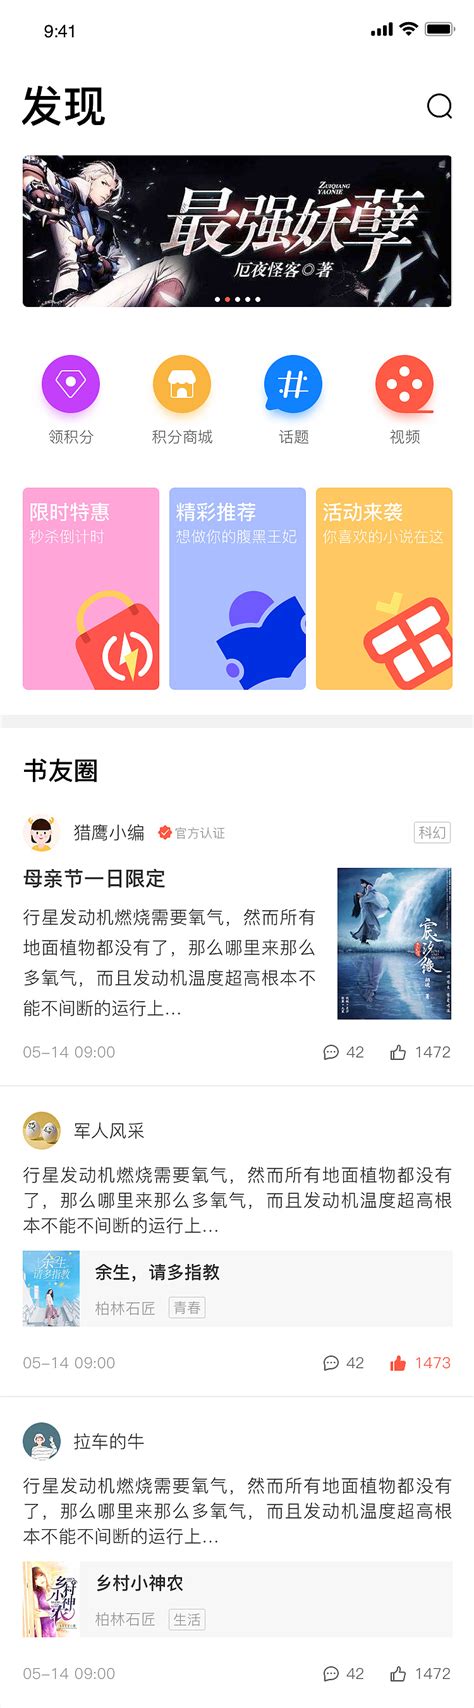 视觉小说APP在腾讯微信广告投放方法分享_深圳市星河互动网络科技有限公司